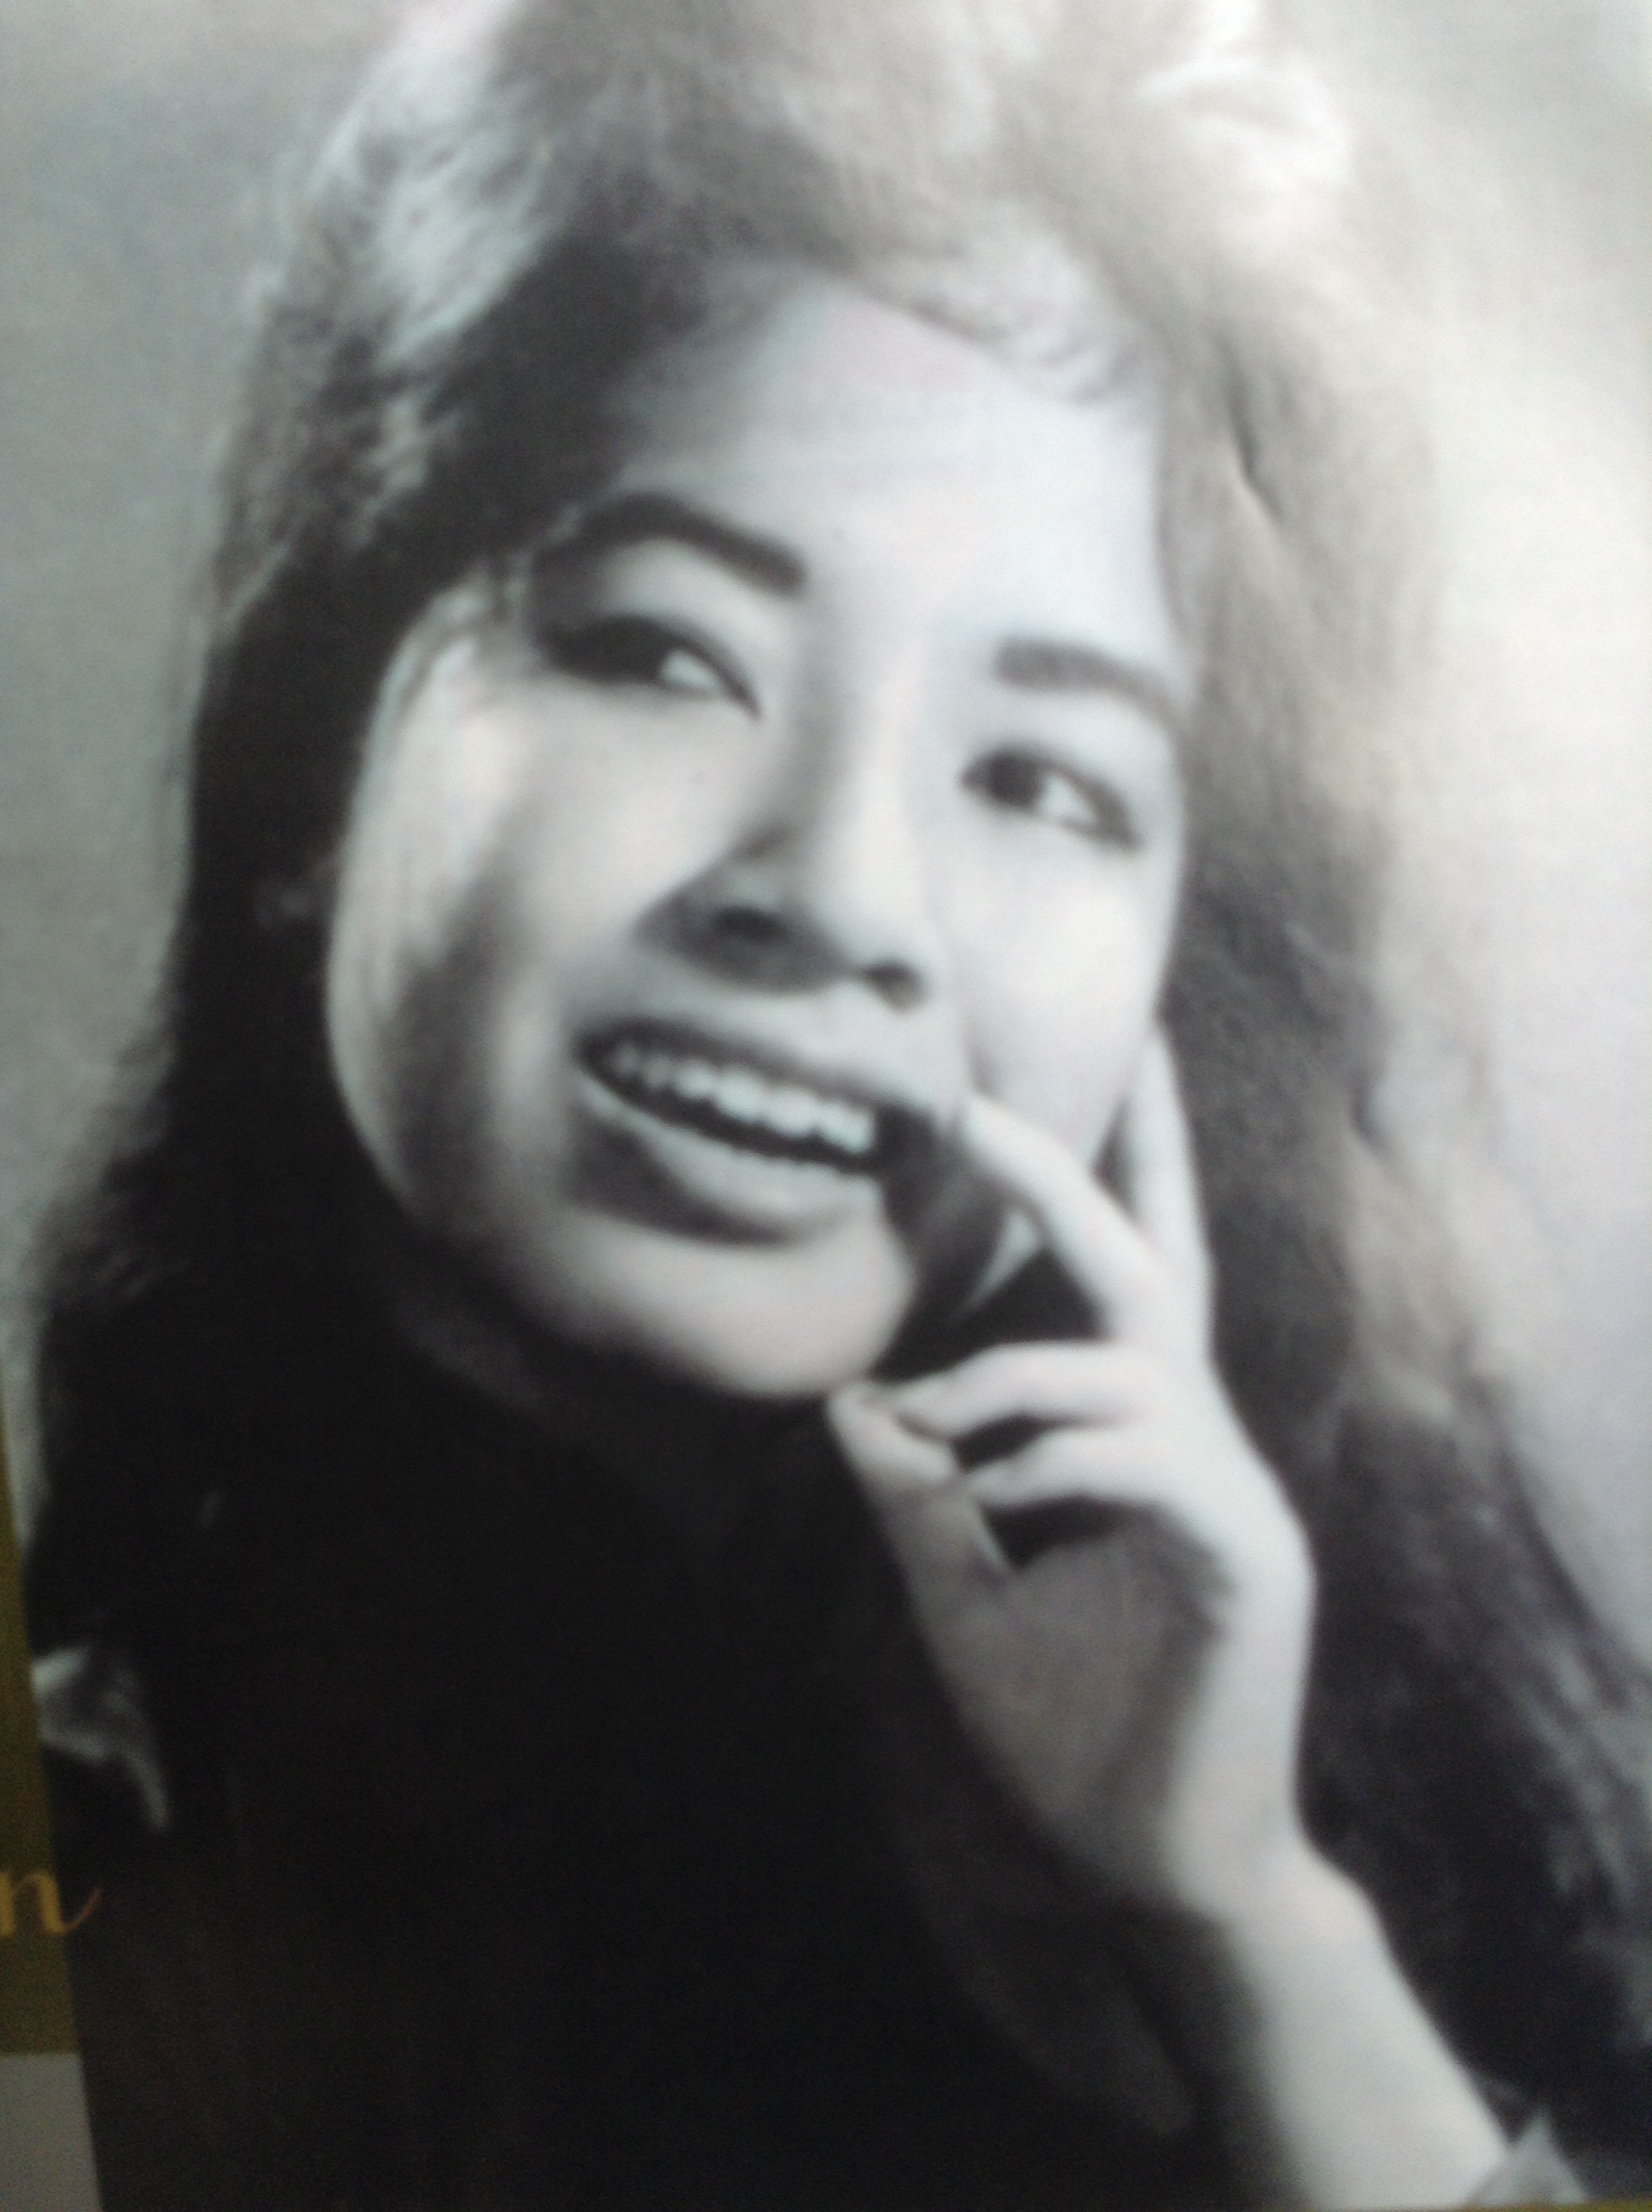 Được khắc họa với những nét đẹp tinh tế và trang nhã, phụ nữ Việt nổi tiếng là những bức ảnh đen trắng đầy quyến rũ và nghệ thuật. Tận hưởng những bức ảnh tuyệt đẹp của phụ nữ Việt qua ống kính của các nhiếp ảnh gia chuyên nghiệp.